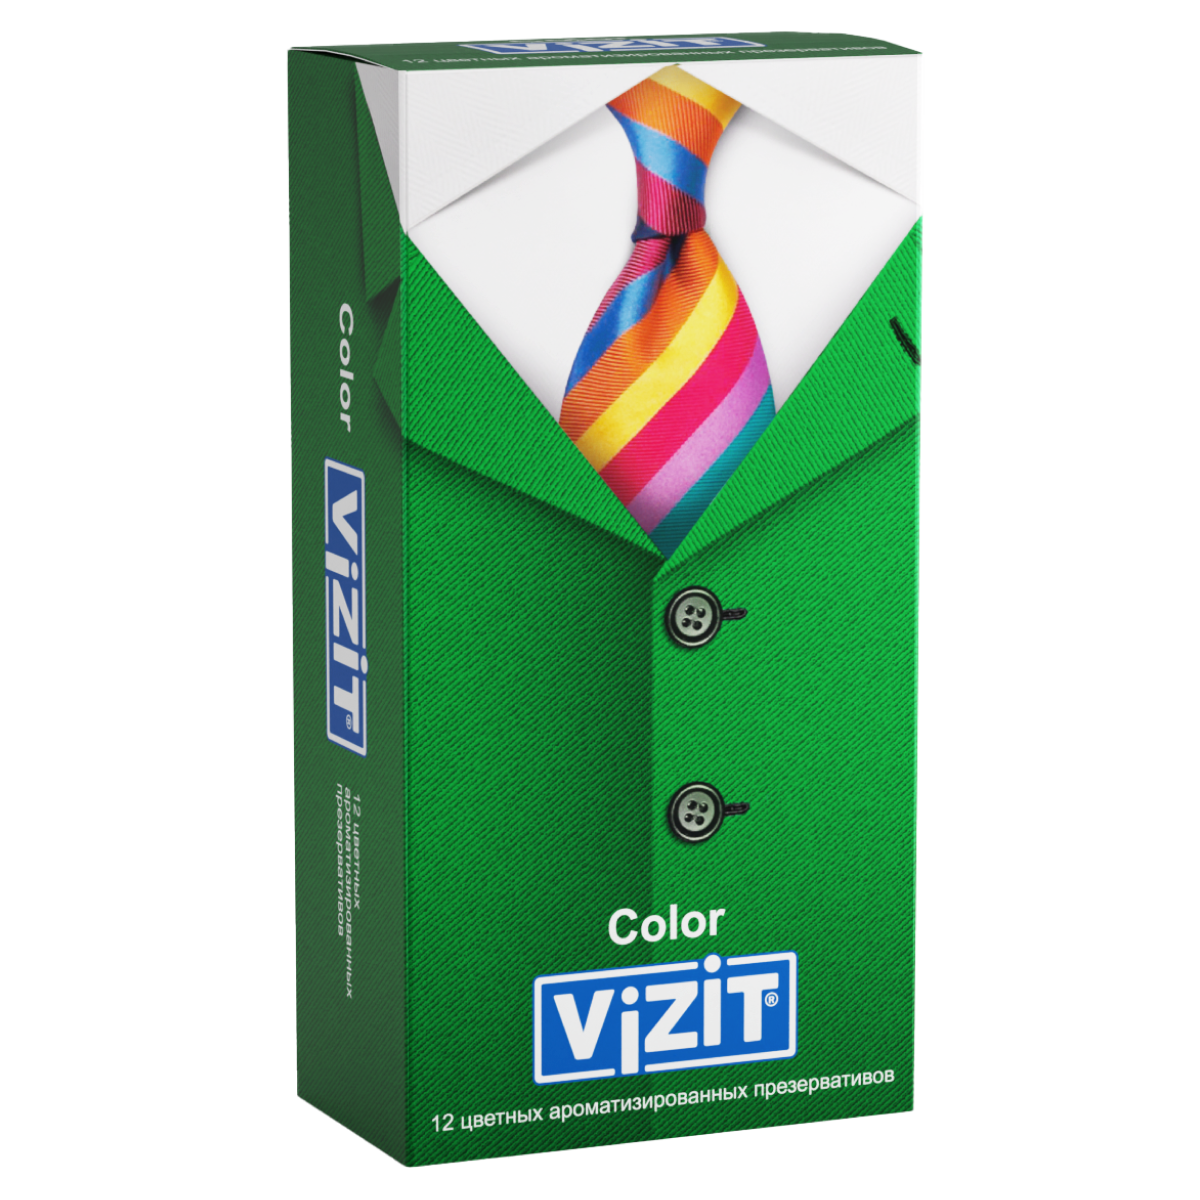 Купить Презервативы VIZIT Color Цветные ароматизированные 12 шт. (Richter)